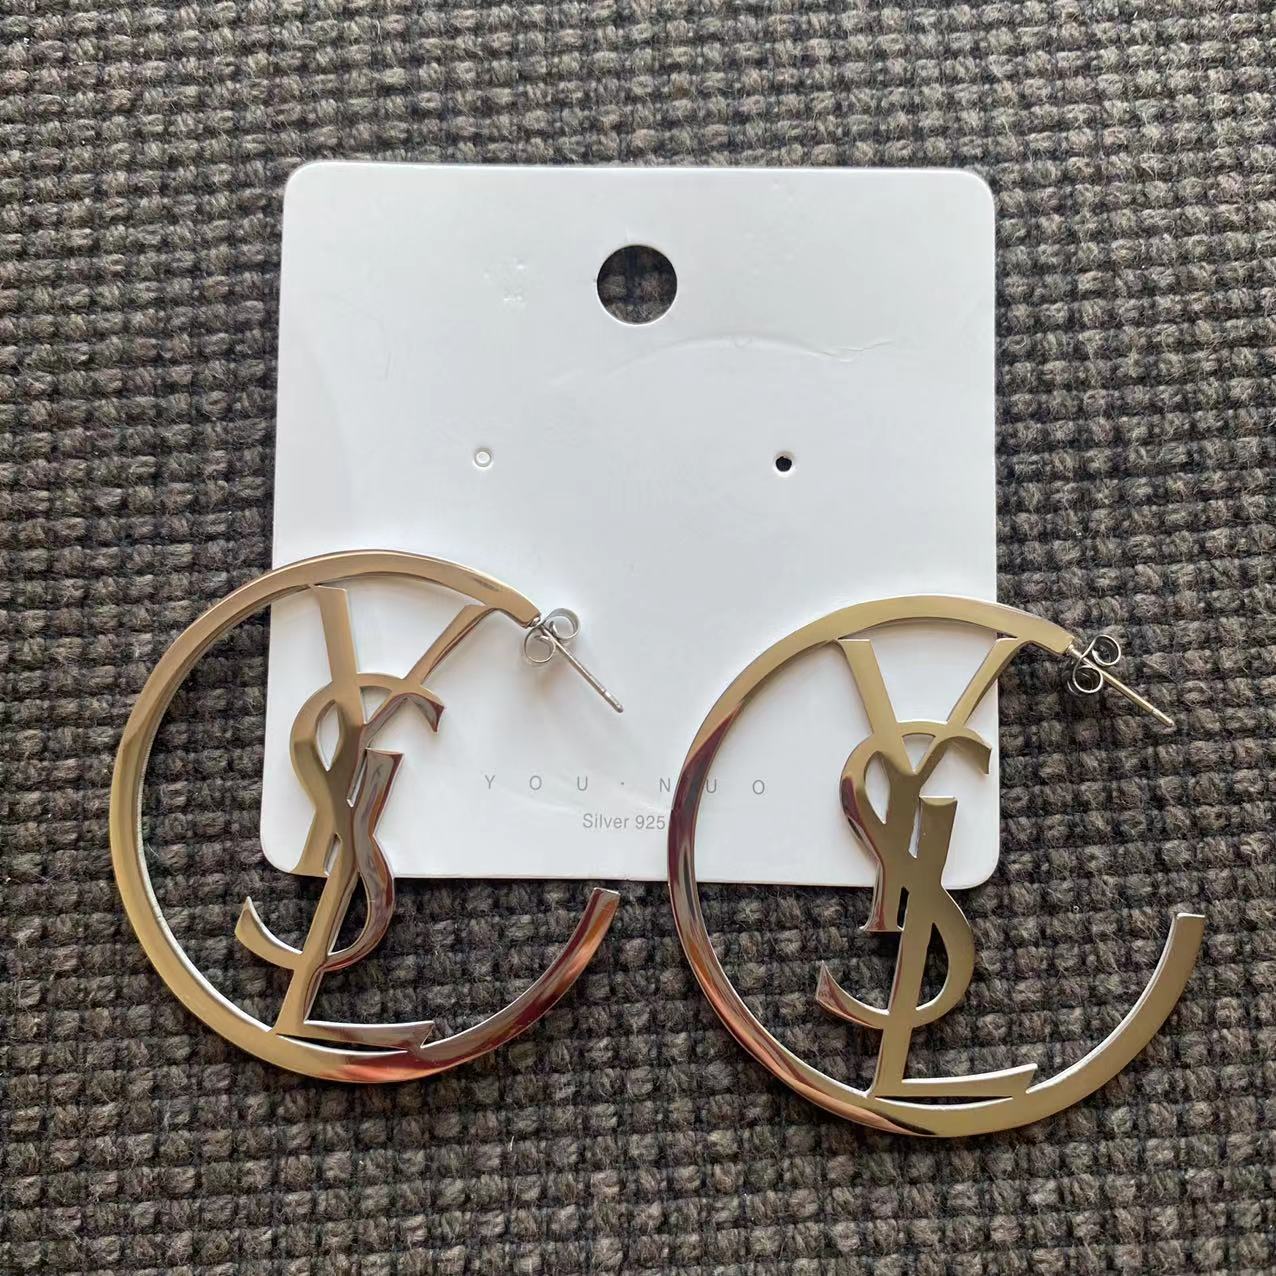 Special Sales! 5.0cm YSL earrings